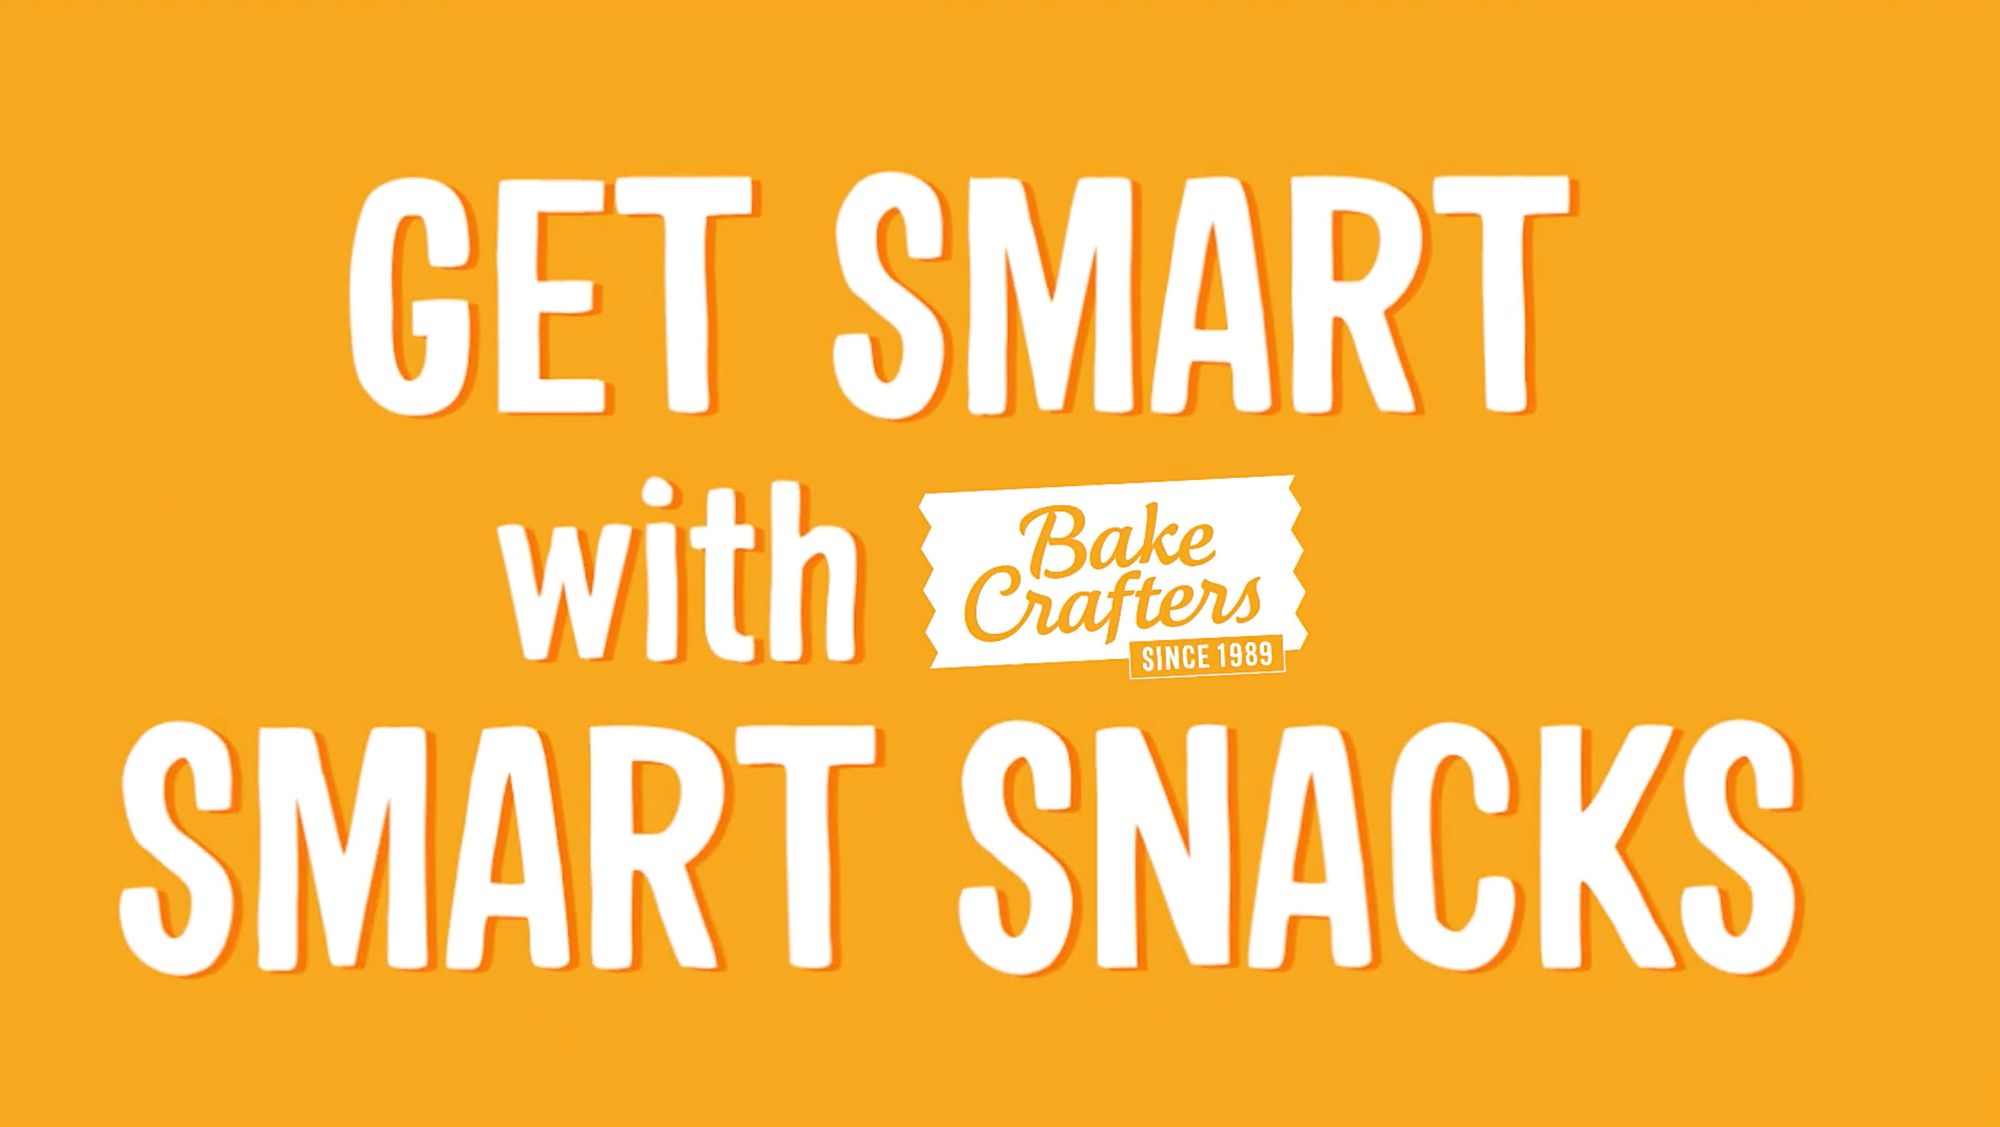 GET SMART with Smart Snacks!